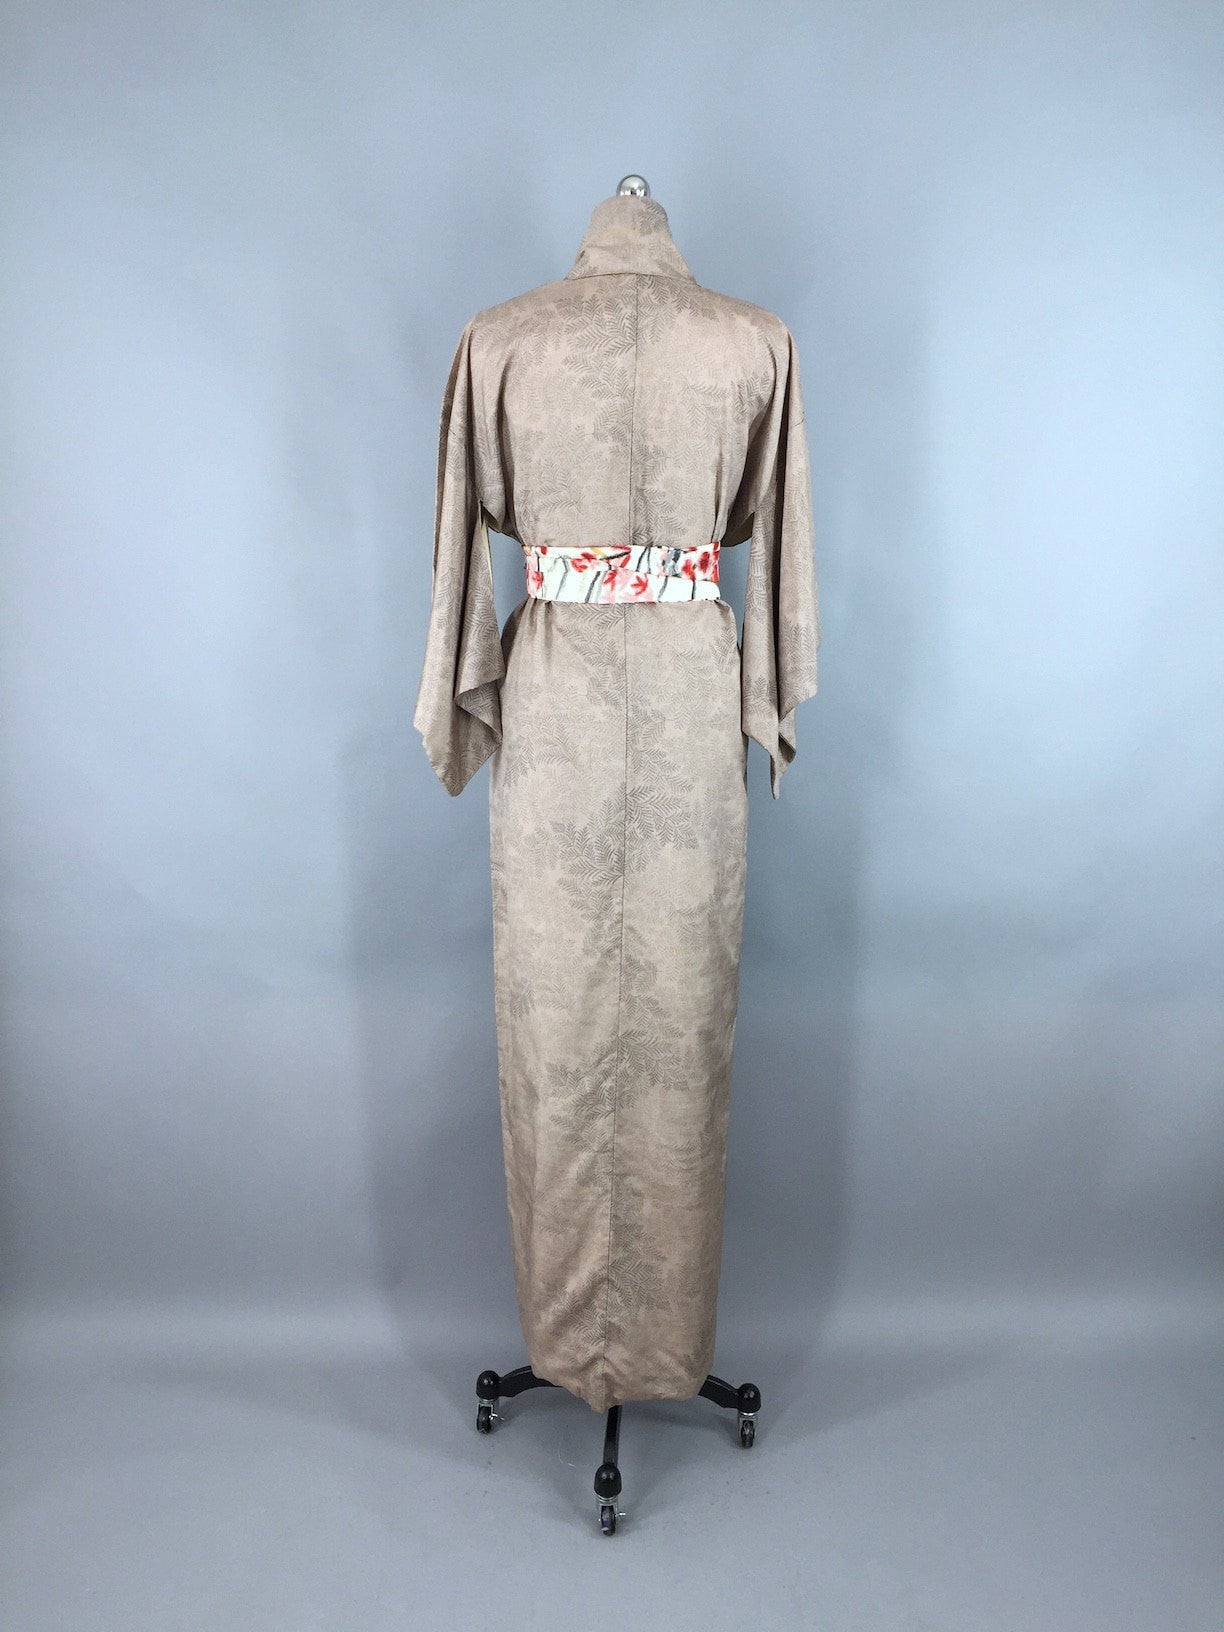 1950s Vintage Kimono Robe / Taupe Tan Fern Print - ThisBlueBird